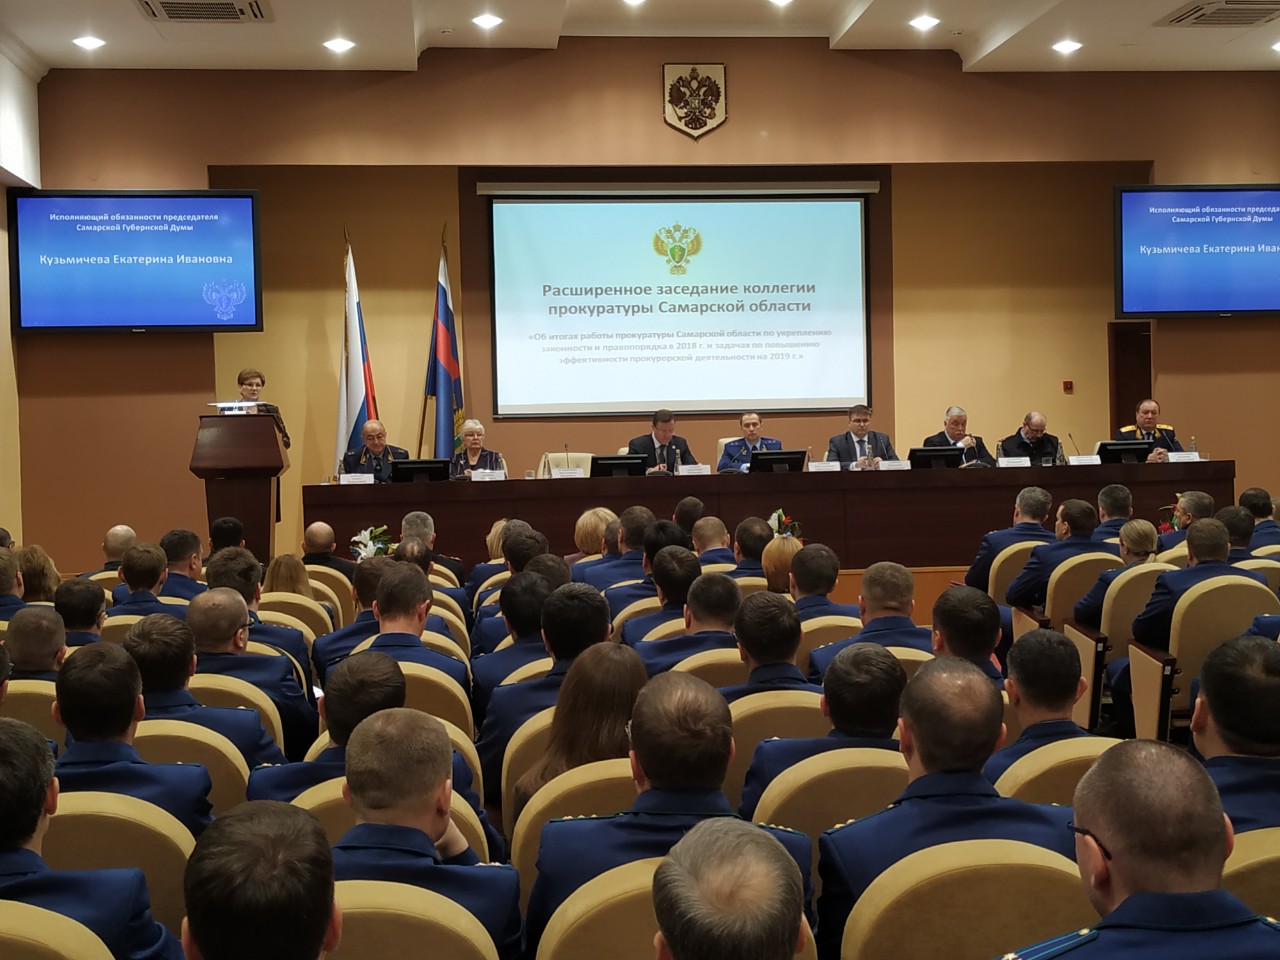 Расширенное заседание коллегии прокуратуры Самарской области